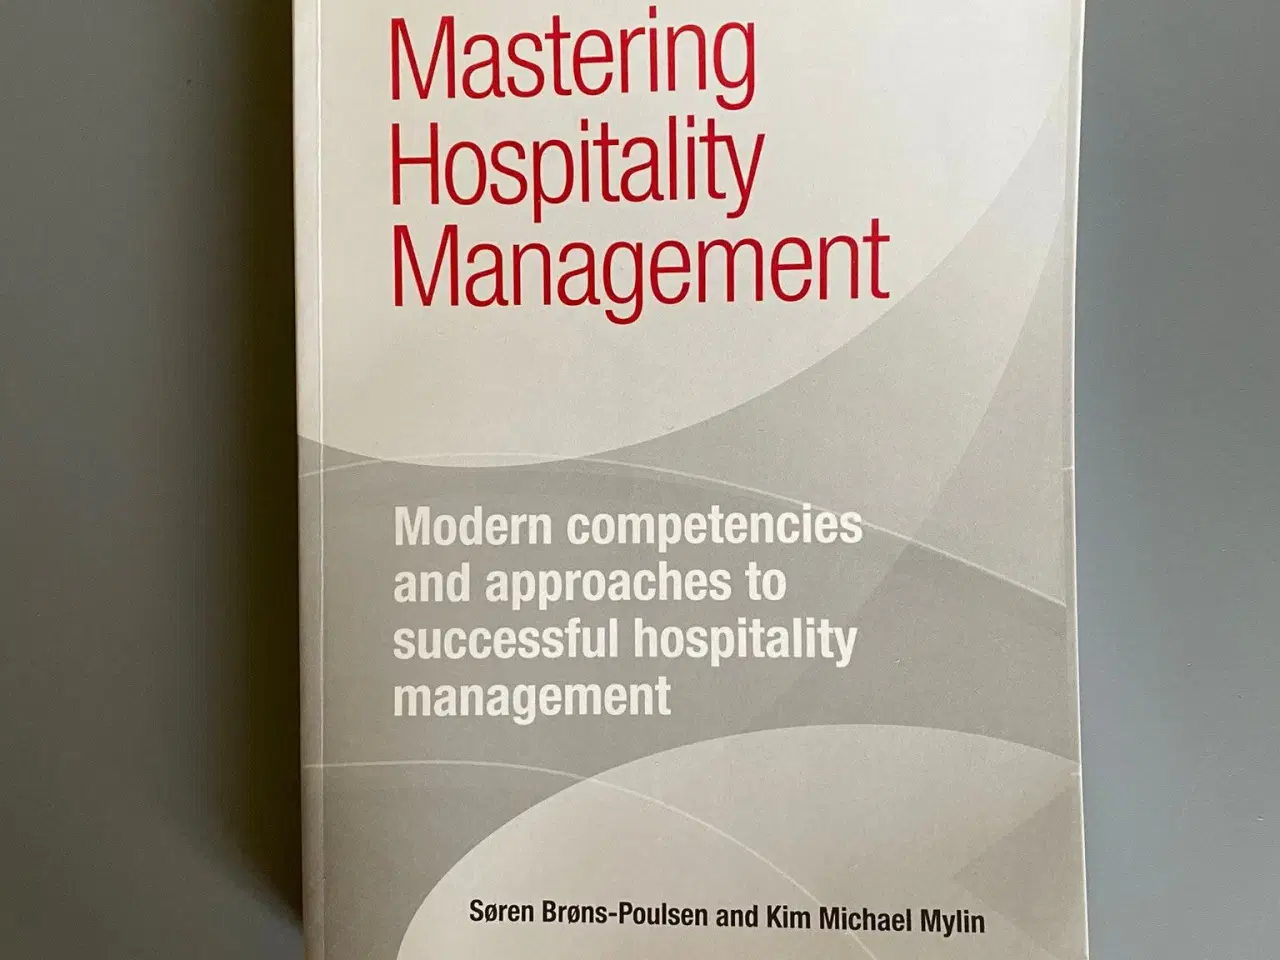 Billede 1 - Mastering hospitality management